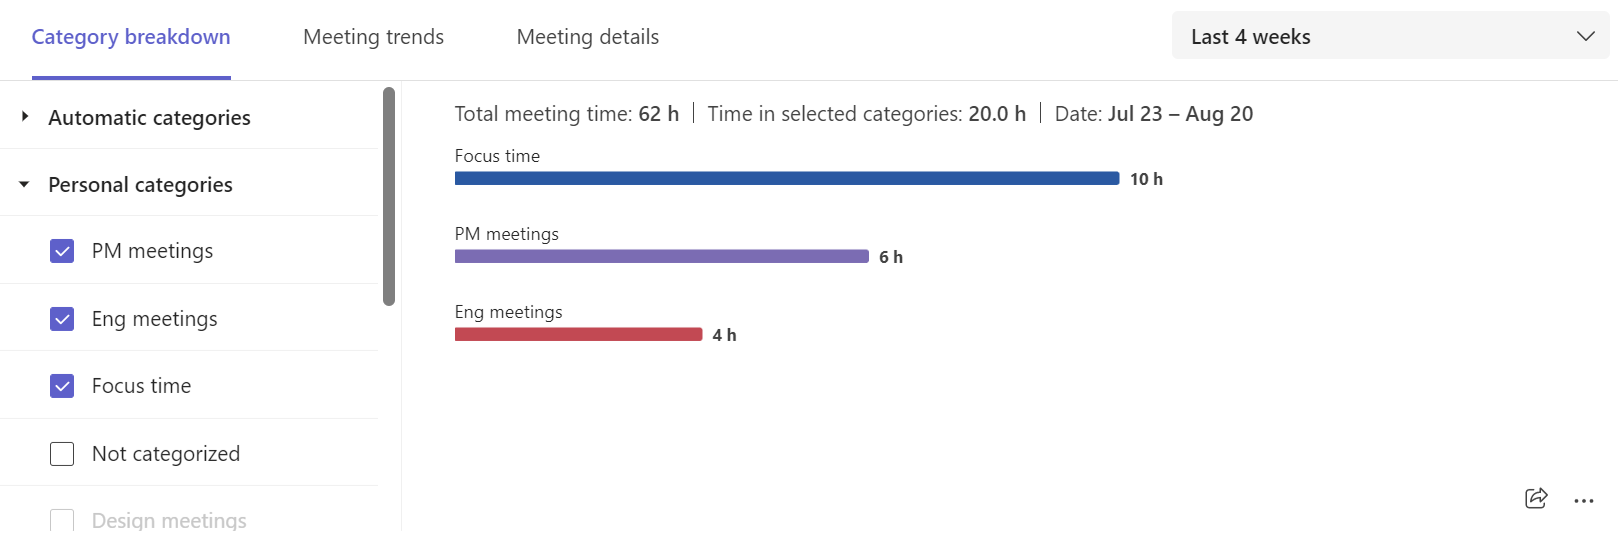 Captura de pantalla que muestra desgloses de categoría de reunión